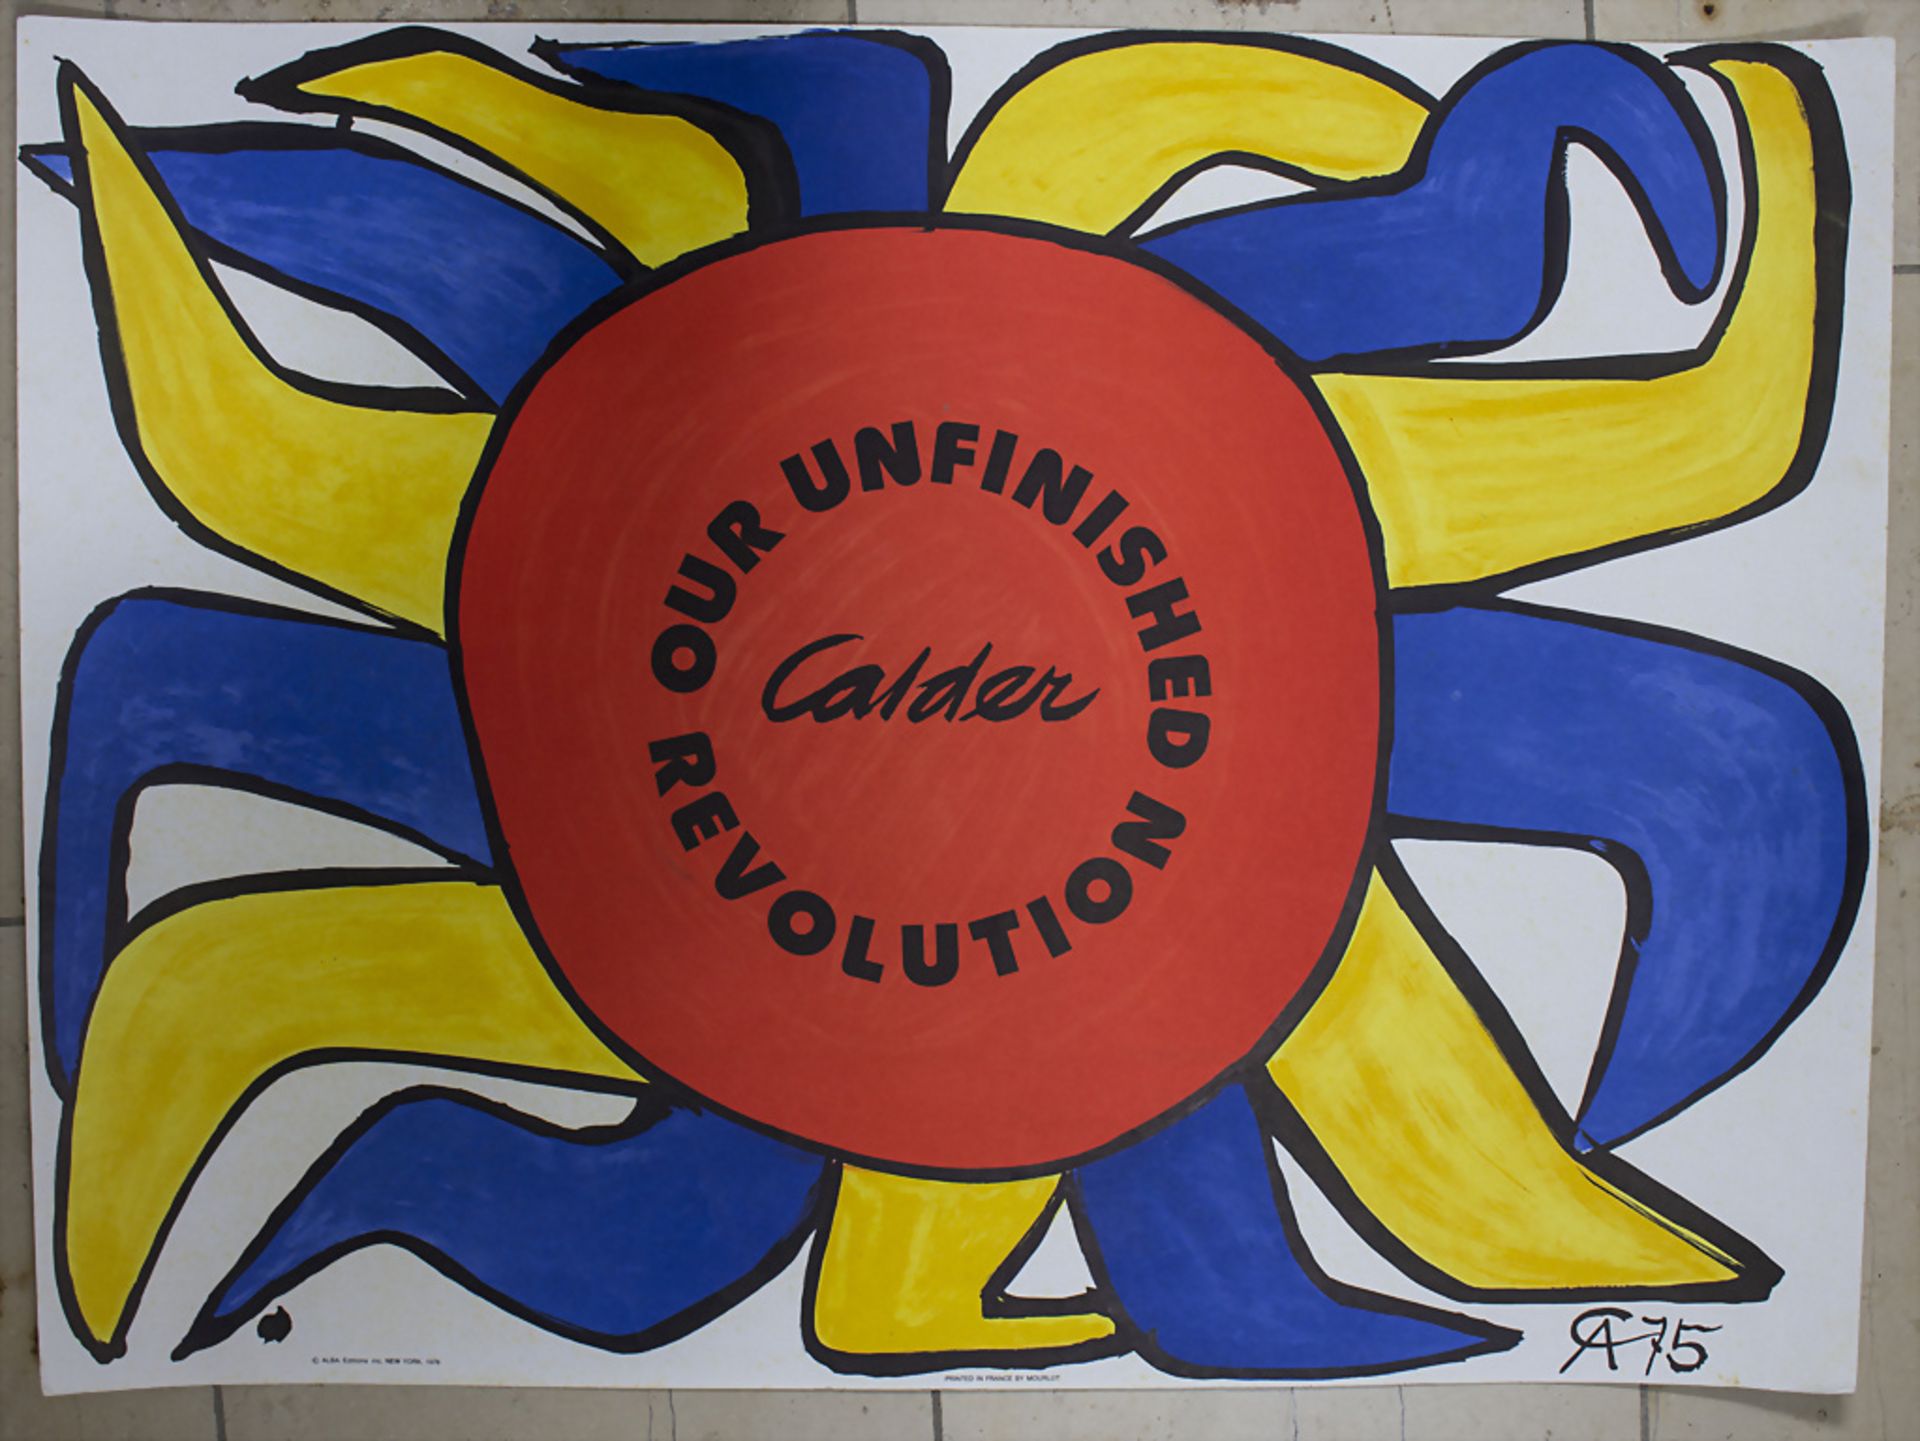 Alexander Calder (1898-1976), 'Our unfinished revolution' (portfolio cover), Entwurf 1975